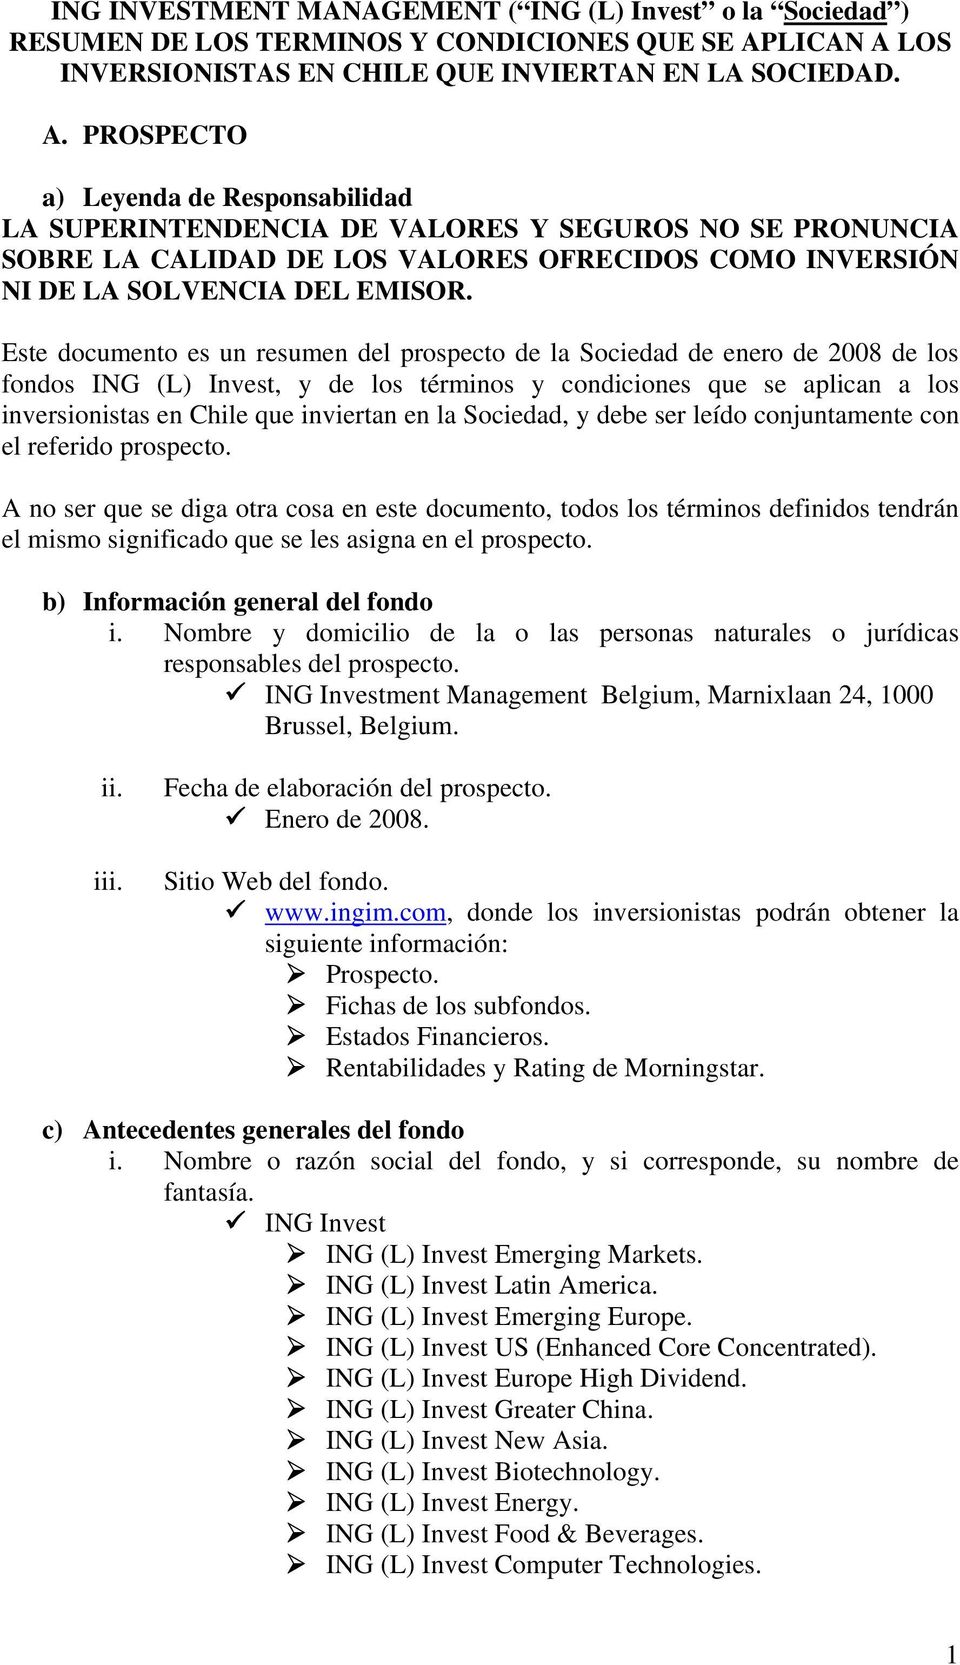 Este documento es un resumen del prospecto de la Sociedad de enero de 2008 de los fondos ING (L) Invest, y de los términos y condiciones que se aplican a los inversionistas en Chile que inviertan en